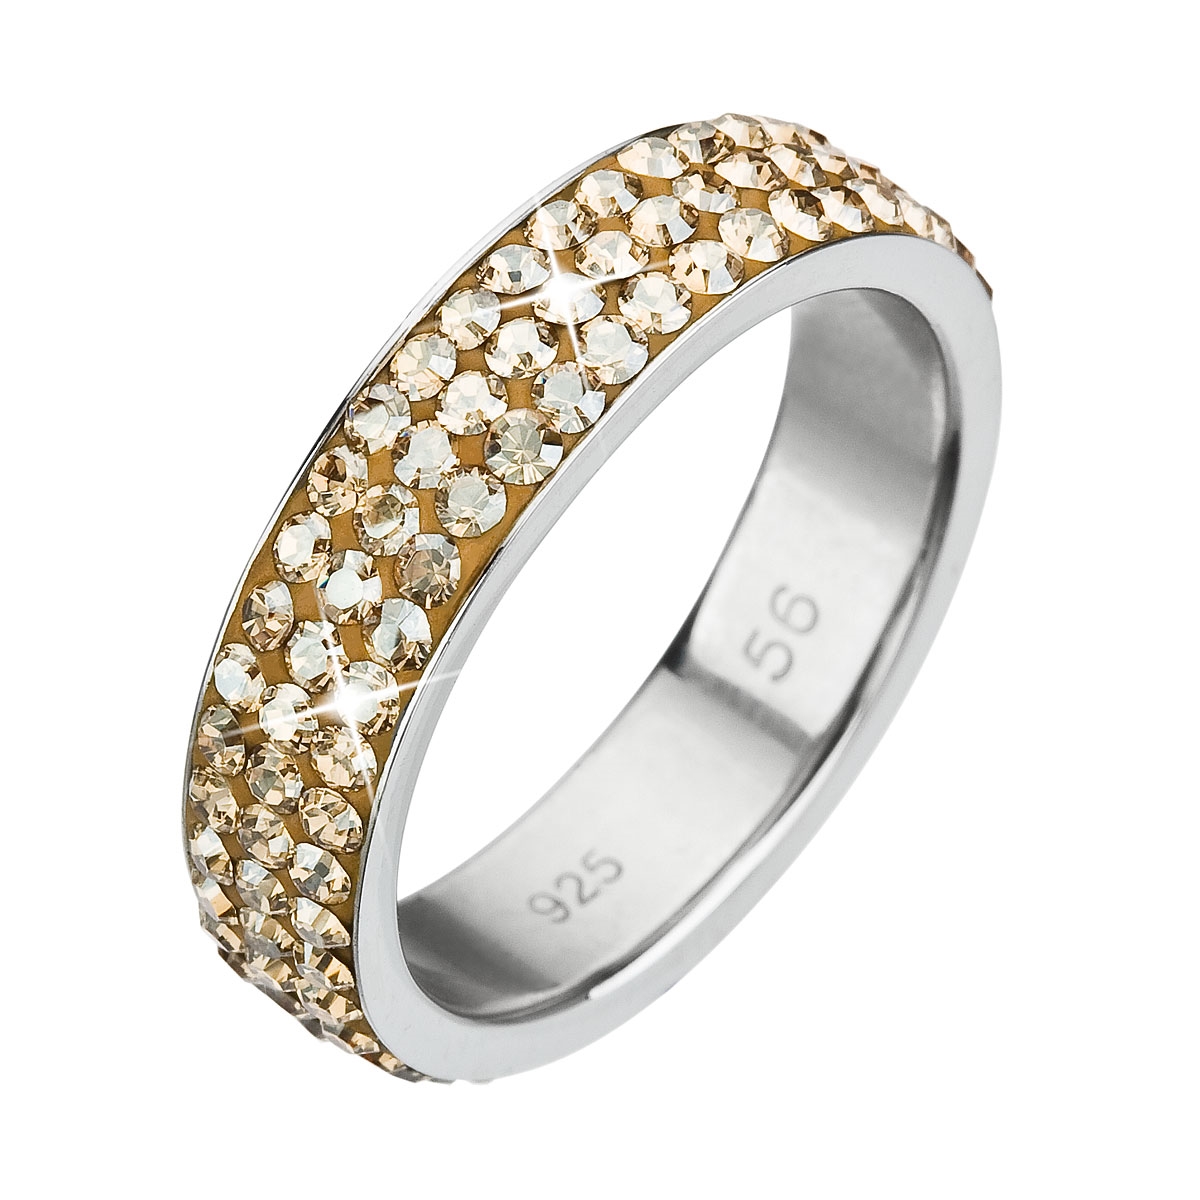 Strieborný prsteň s kryštálmi Swarovski Gold